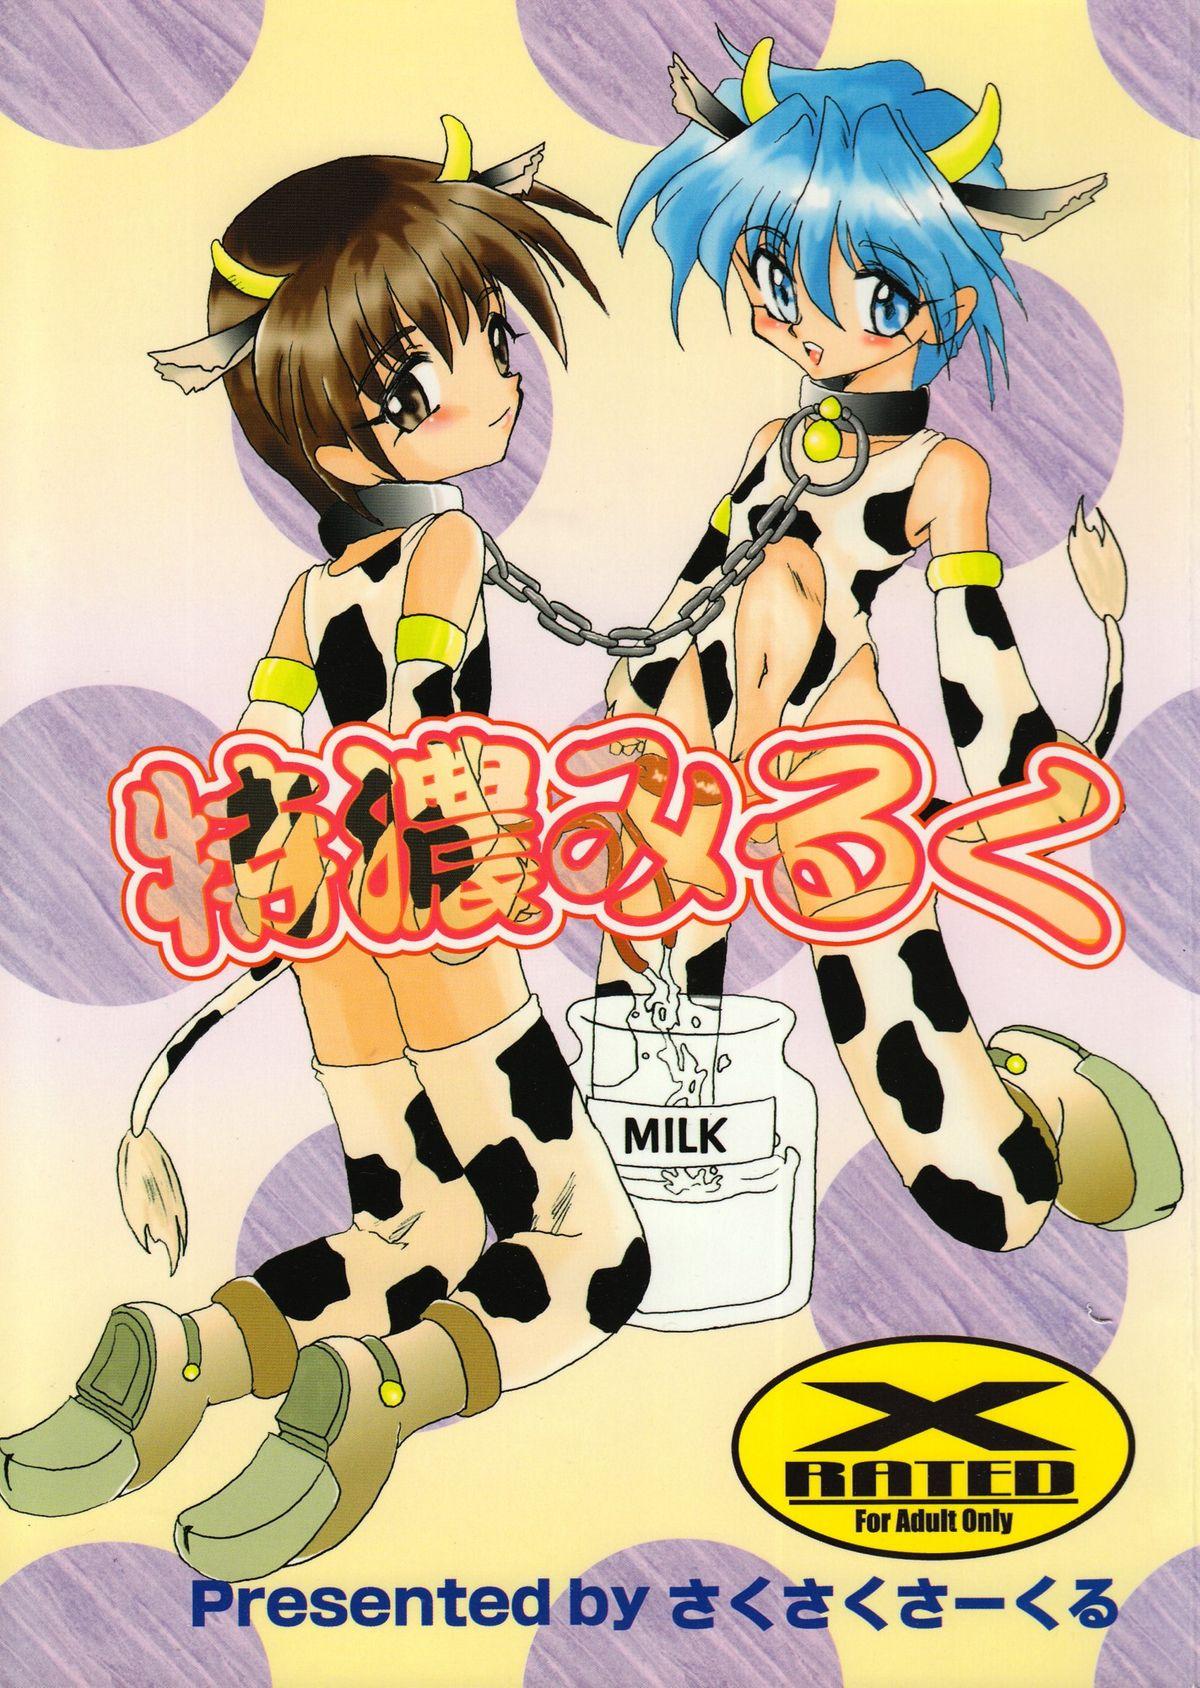 Tokunou Milk 0